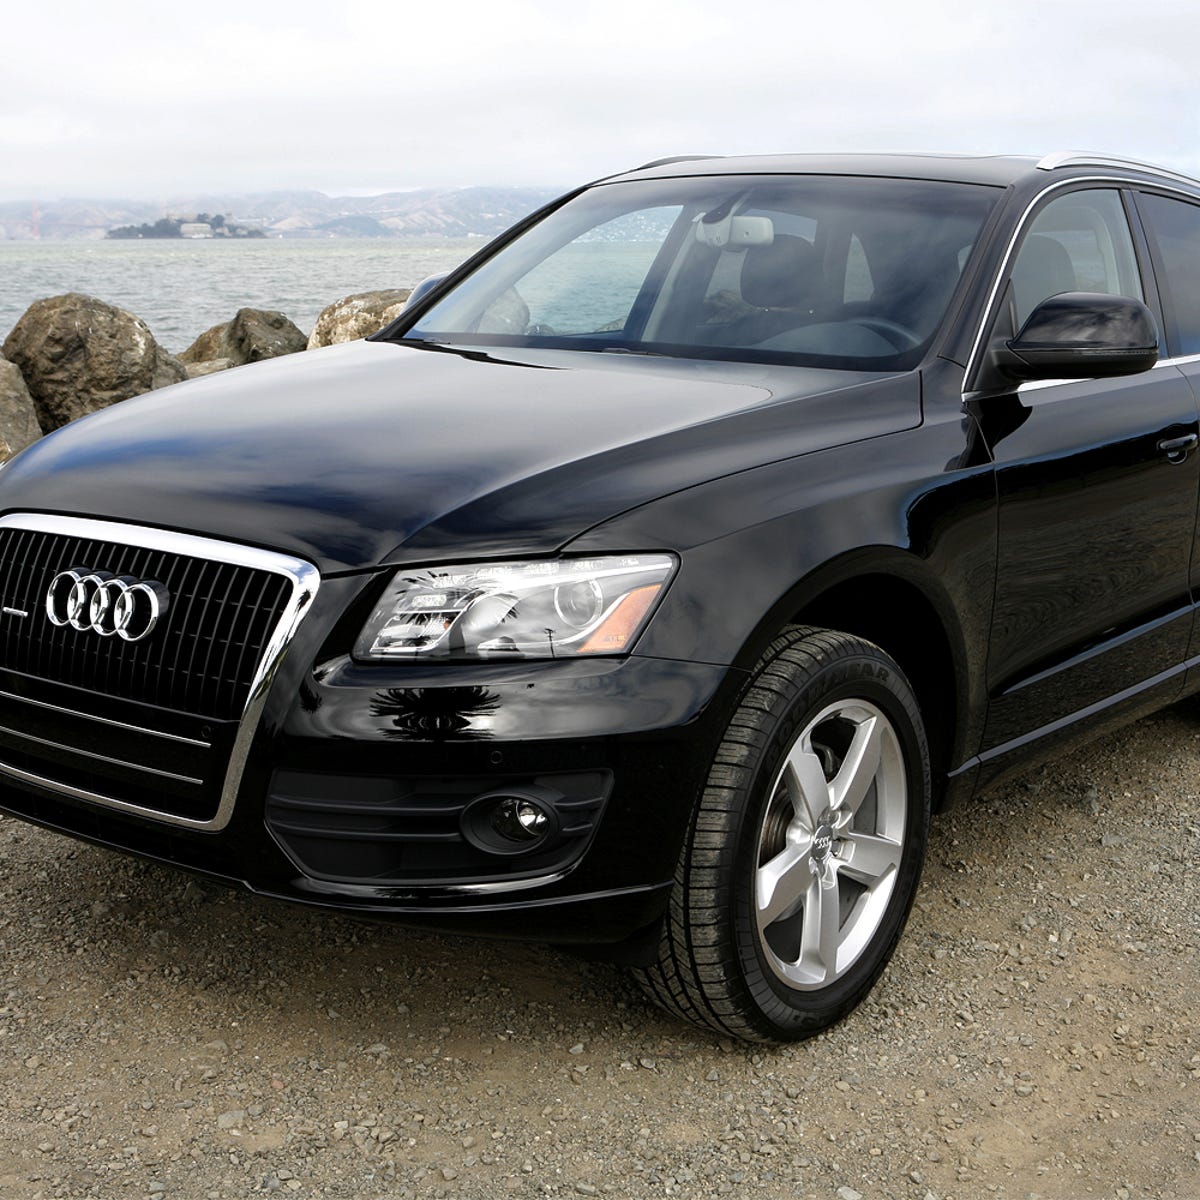 2009 Audi Q5 review: 2009 Audi Q5 - CNET